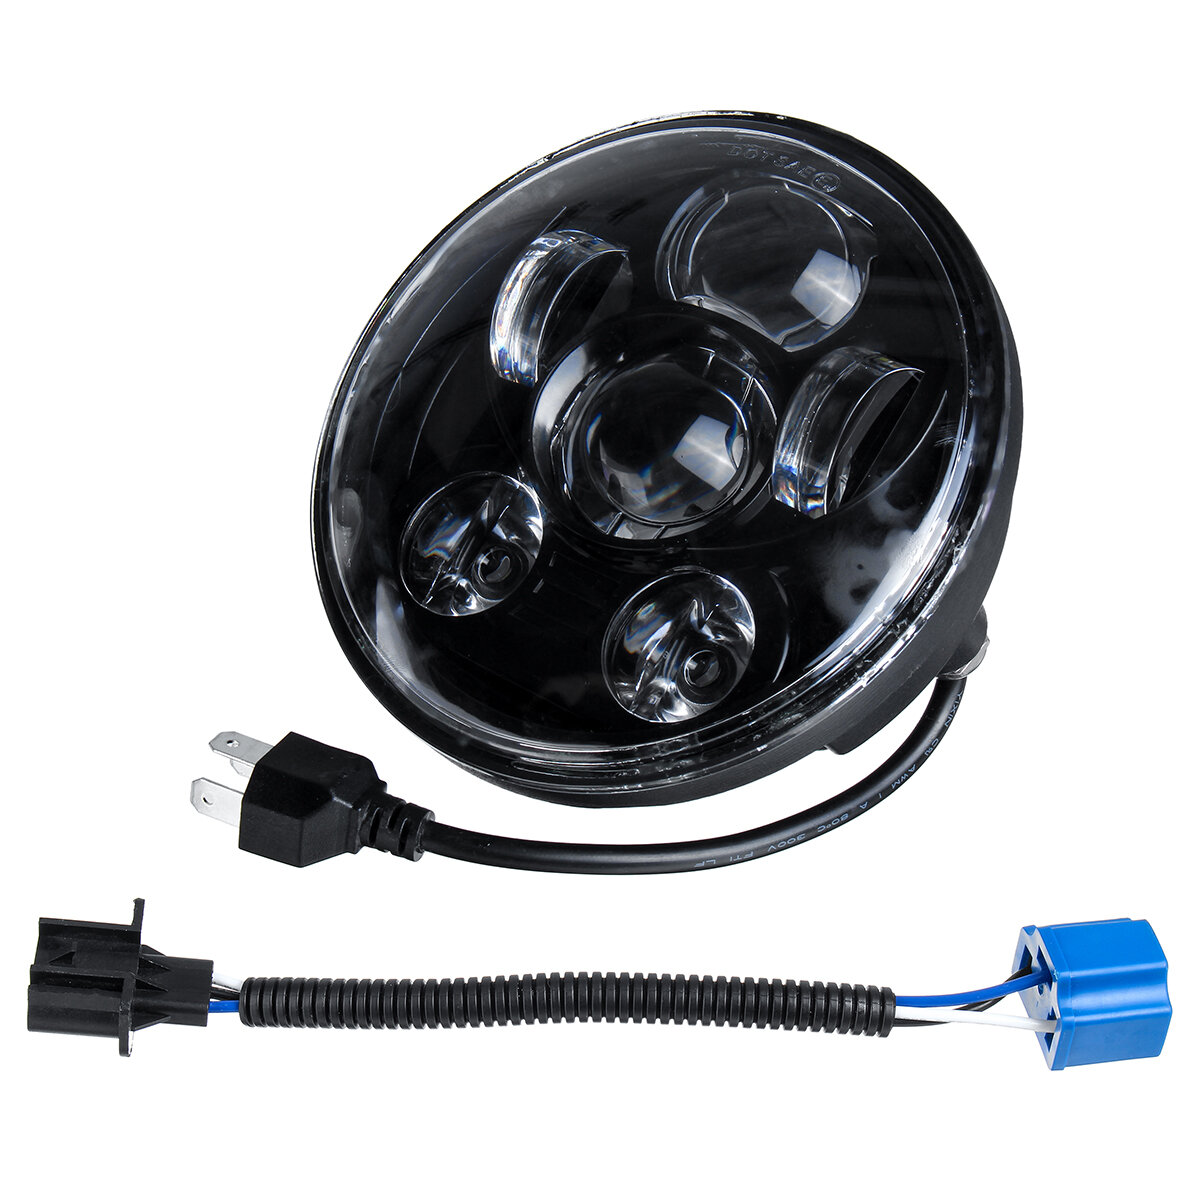 5.75 Inch H4 H13 Motorfiets LED Koplampen Verzegelde Projector Hi-Lo Beam Head Lamp Voor Harley